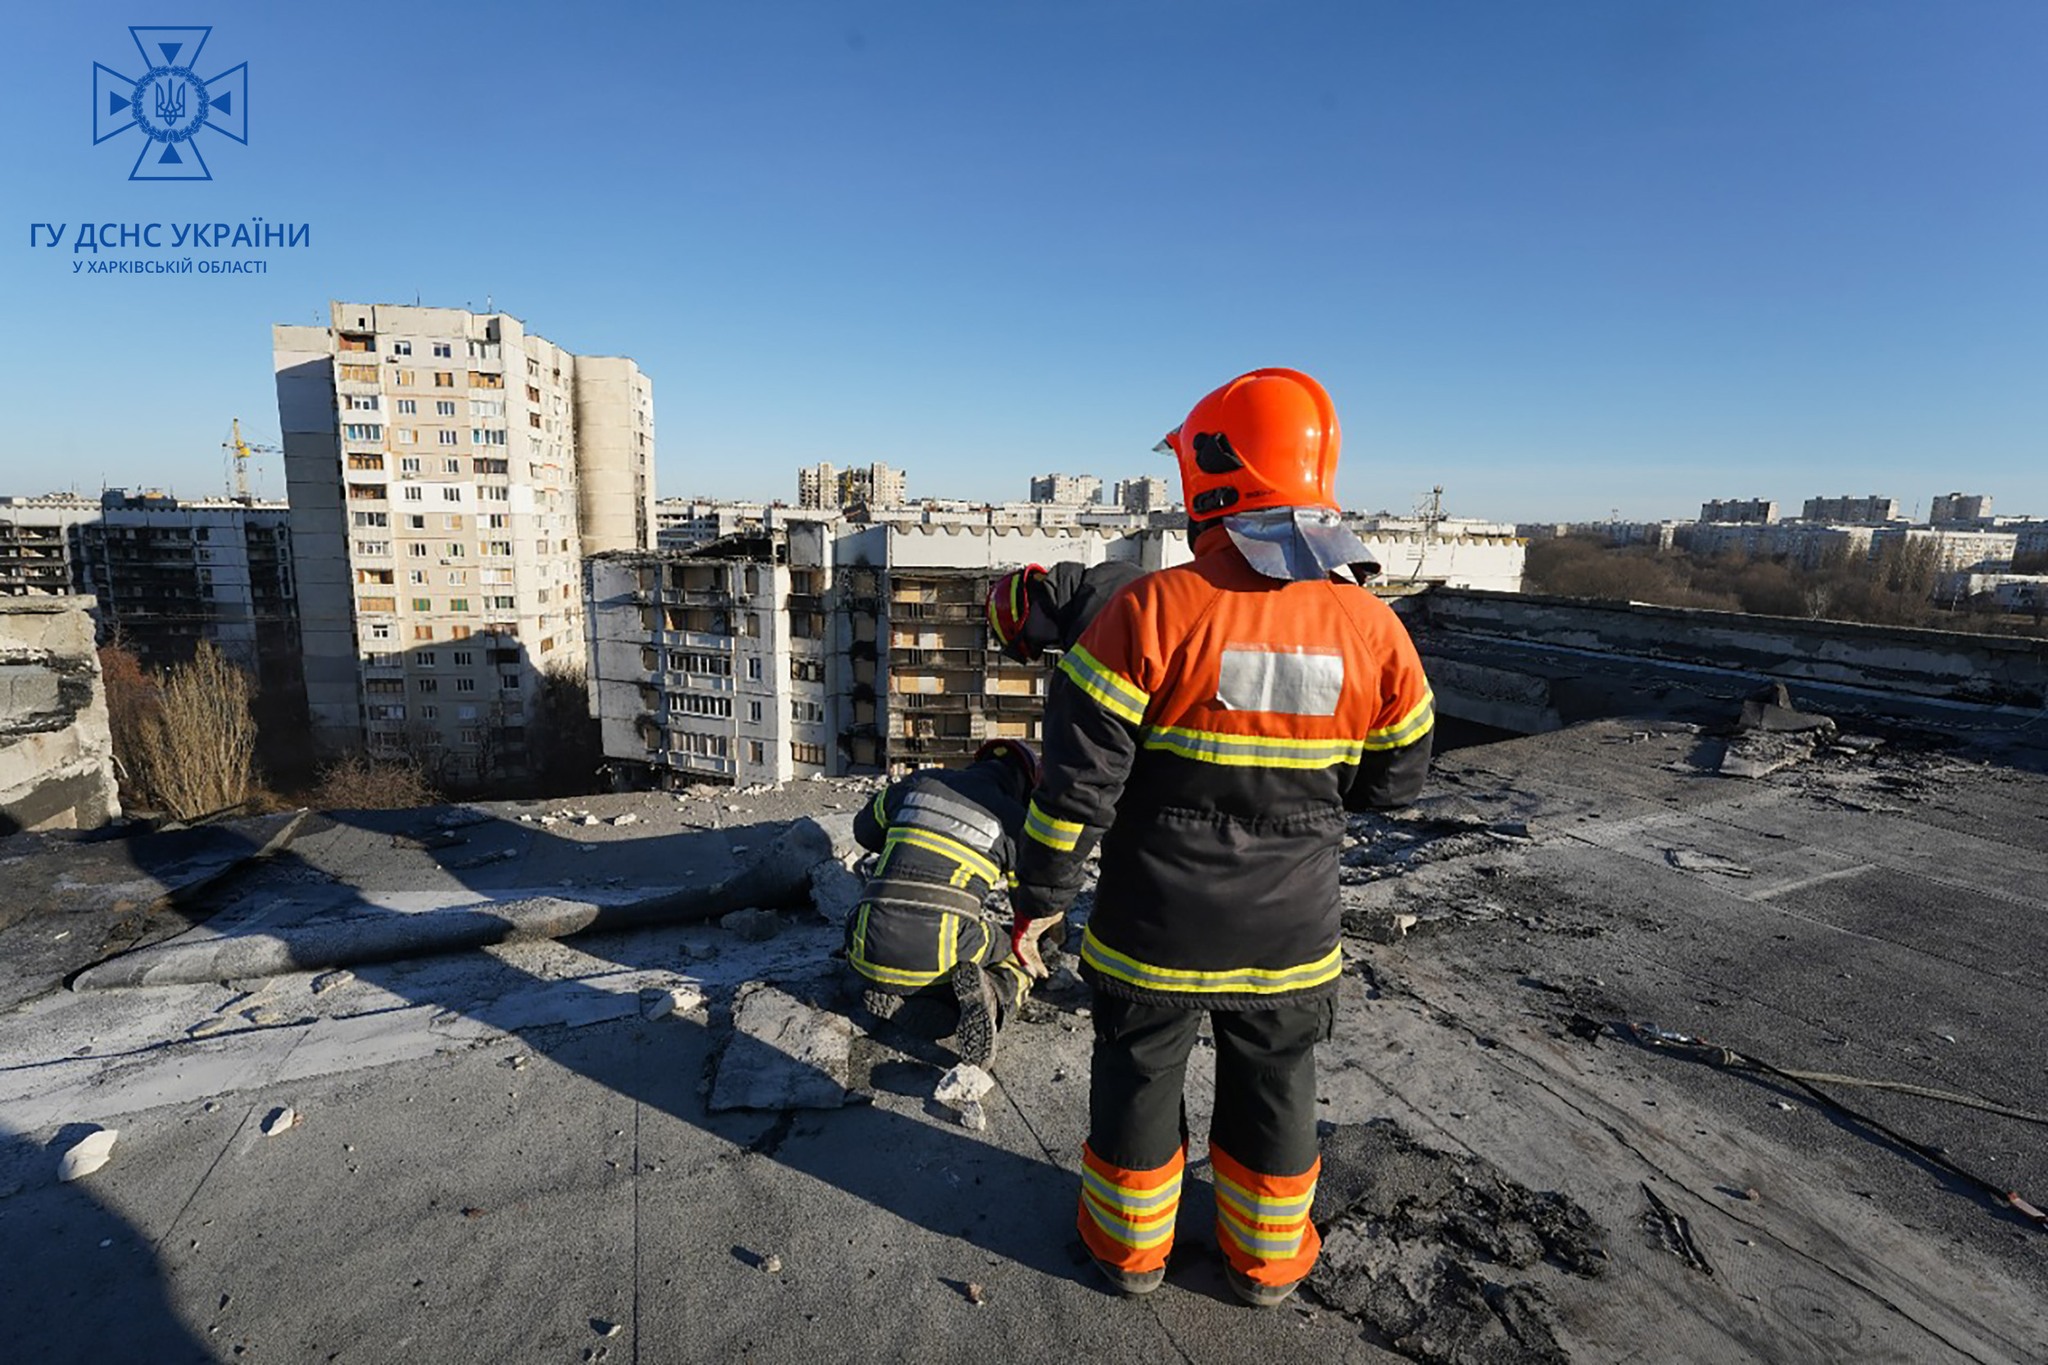  В Харькове разбирают завалы зданий 23 января для дальнейшего ремонта 4